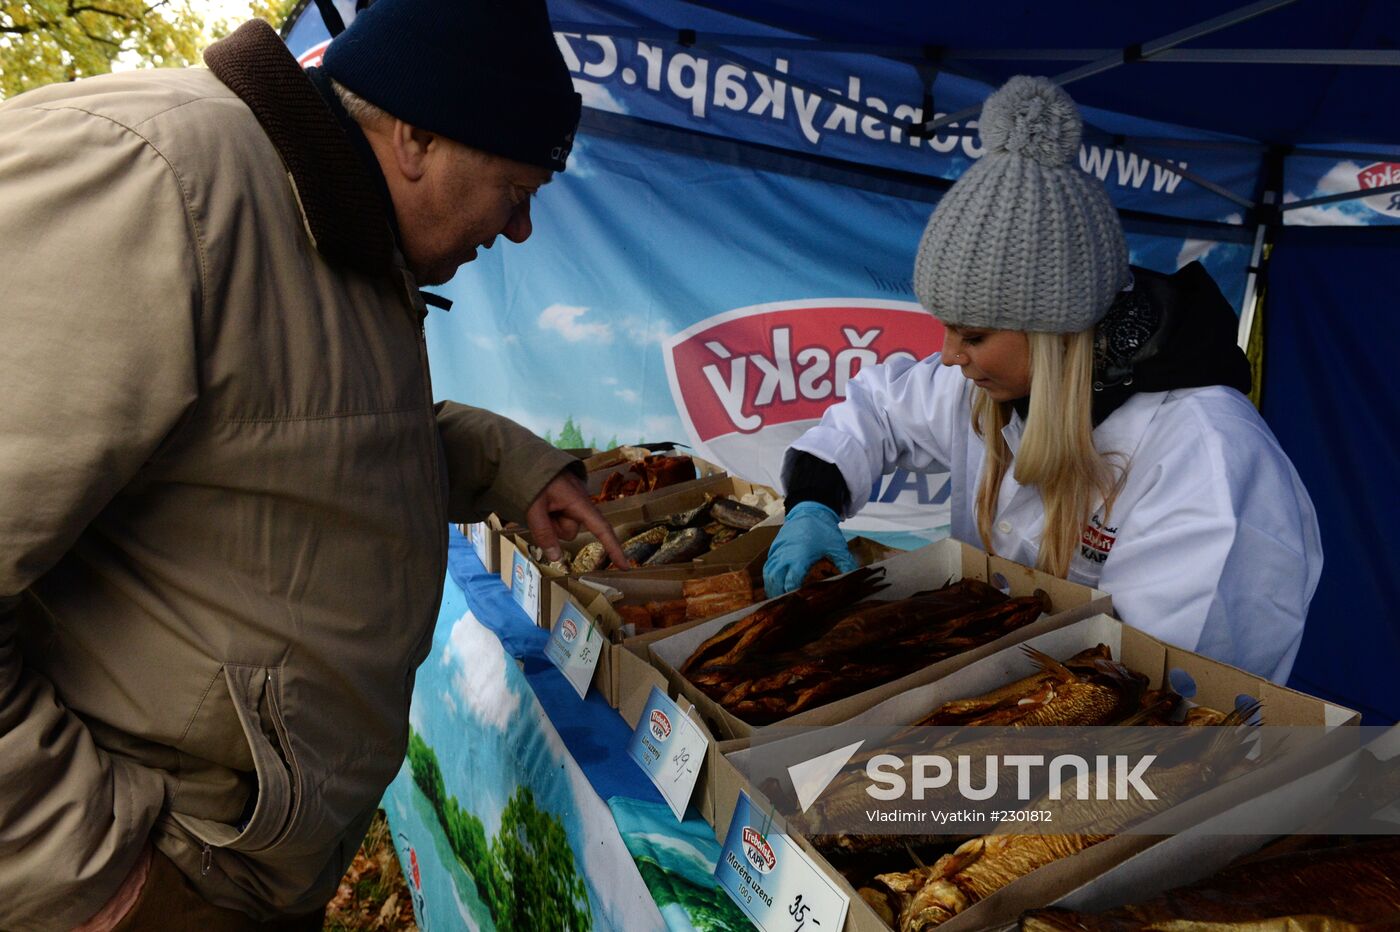 Fisherman's Feast in the Czech Republic